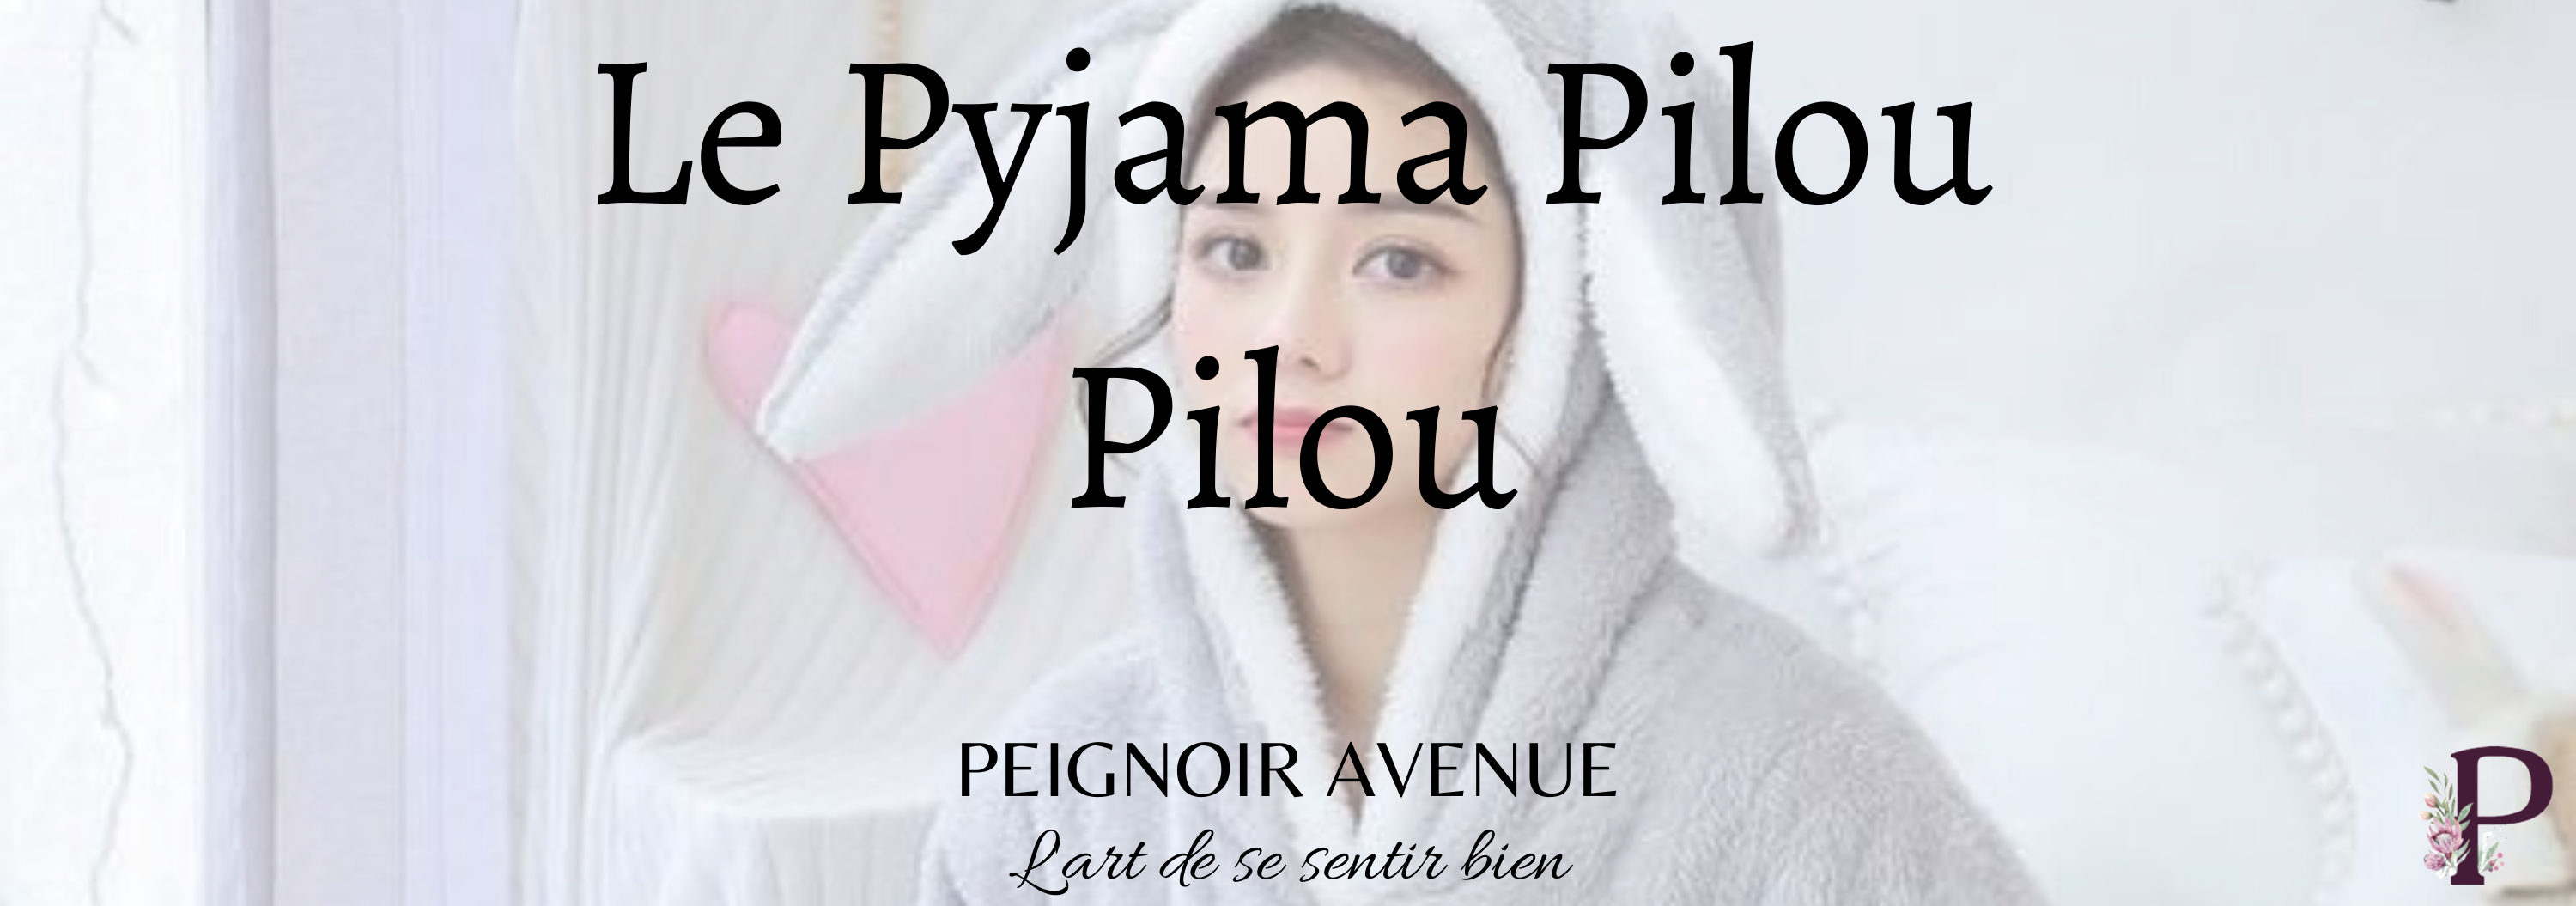 Pyjama Pilou Pilou  Le Pilou Pilou - Le Pilou Pilou